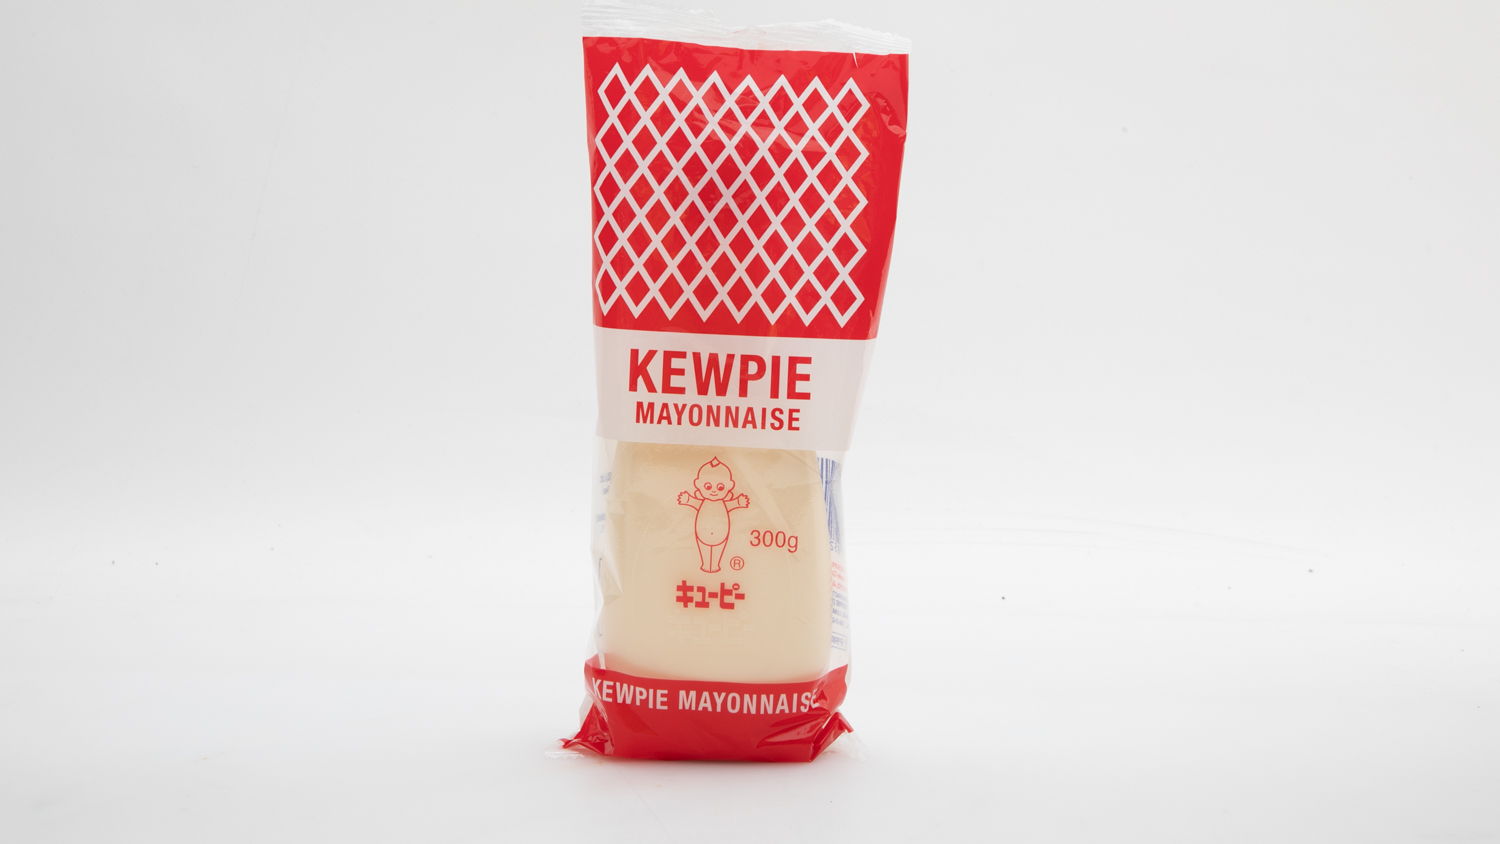 Kewpie Mayonnaise carousel image